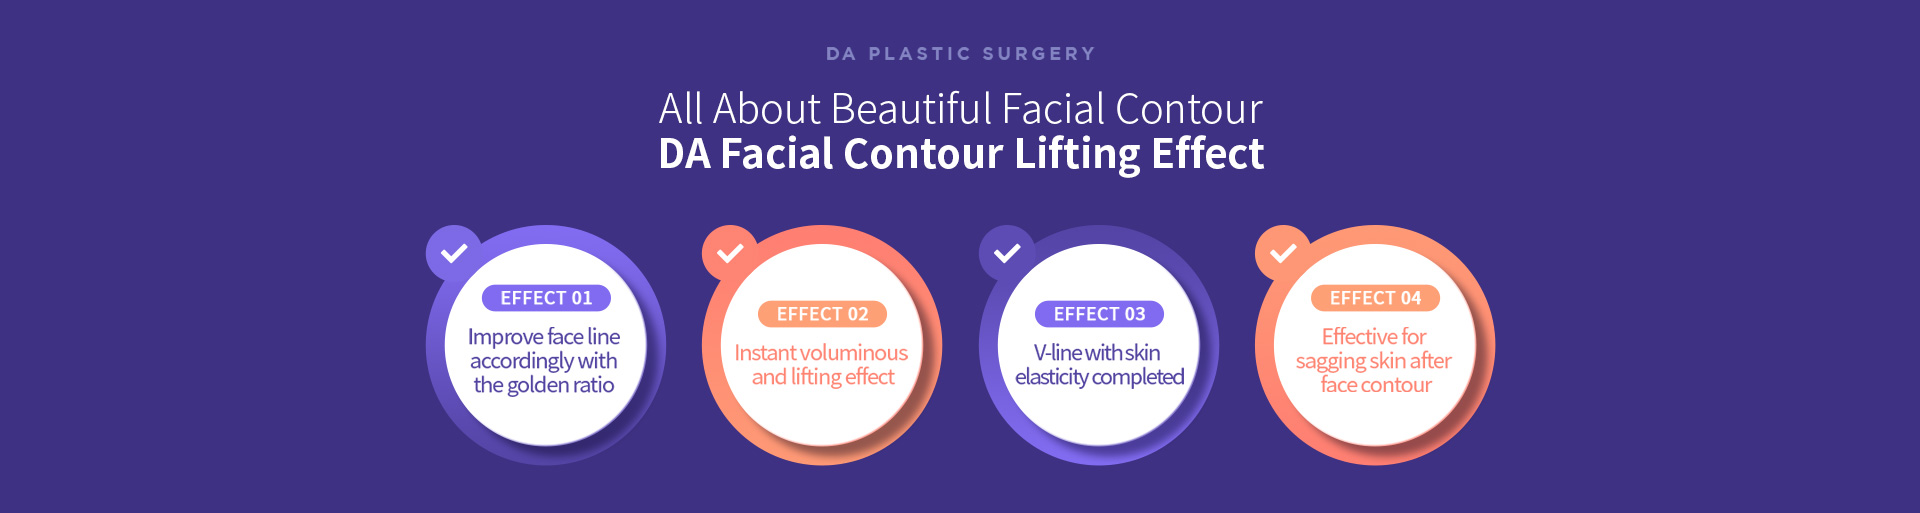 All About Beautiful Facial Contour DA Facial Contour Lifting Effect